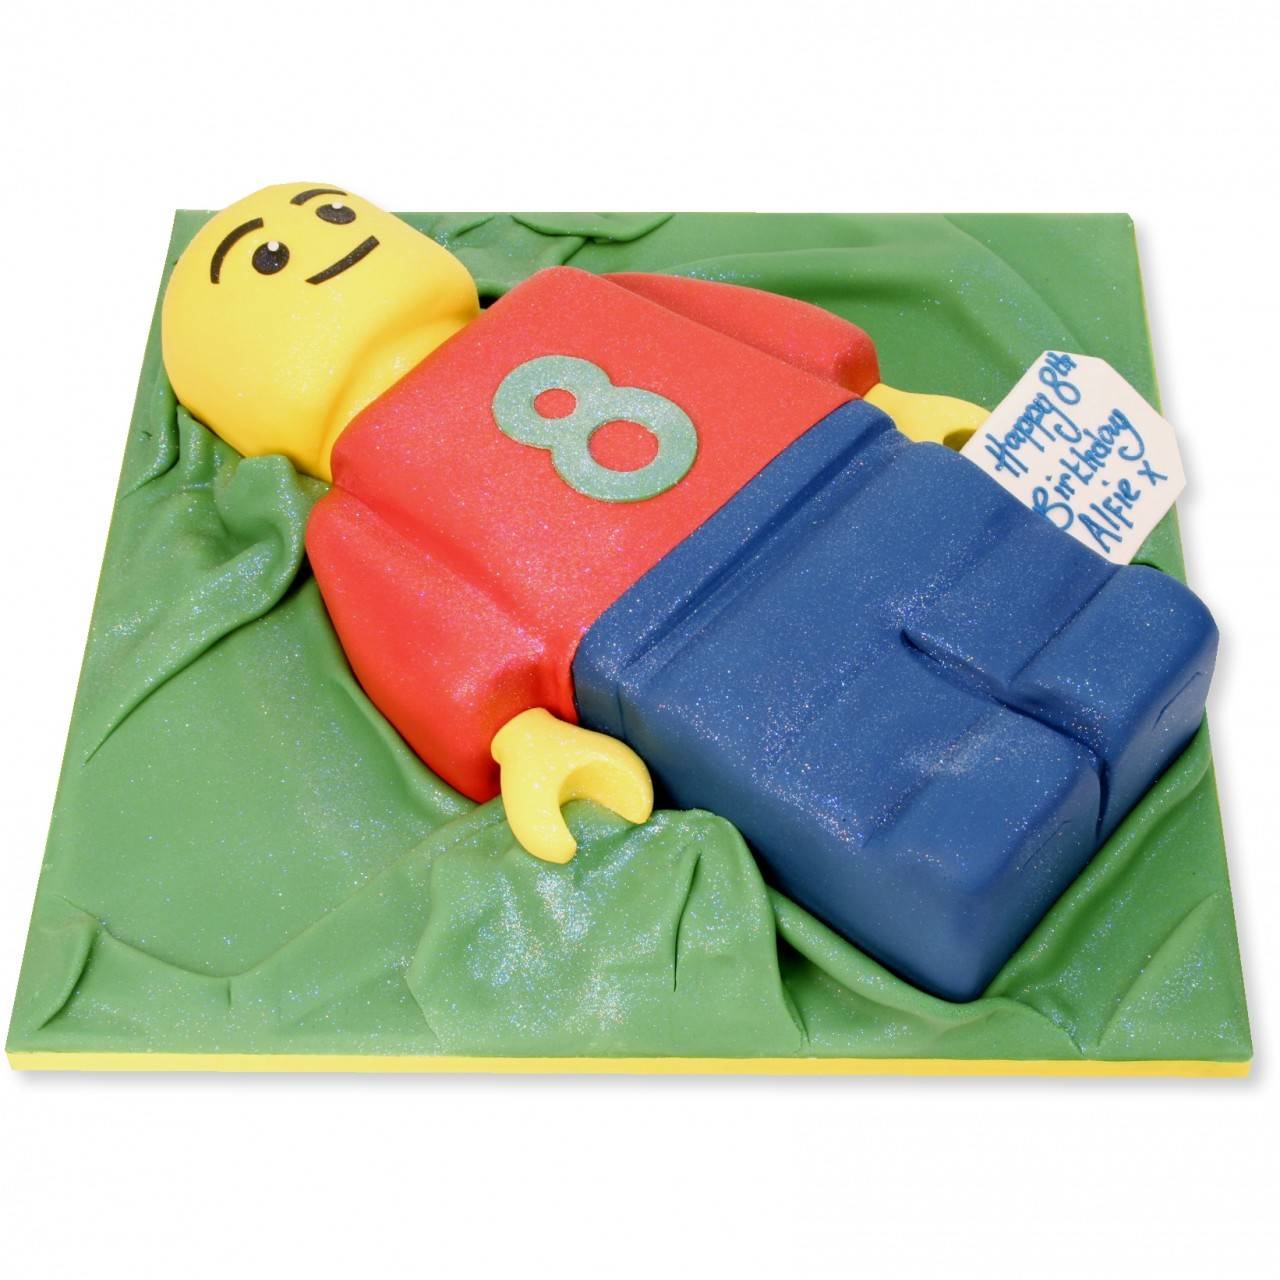 LEGO birthday cake